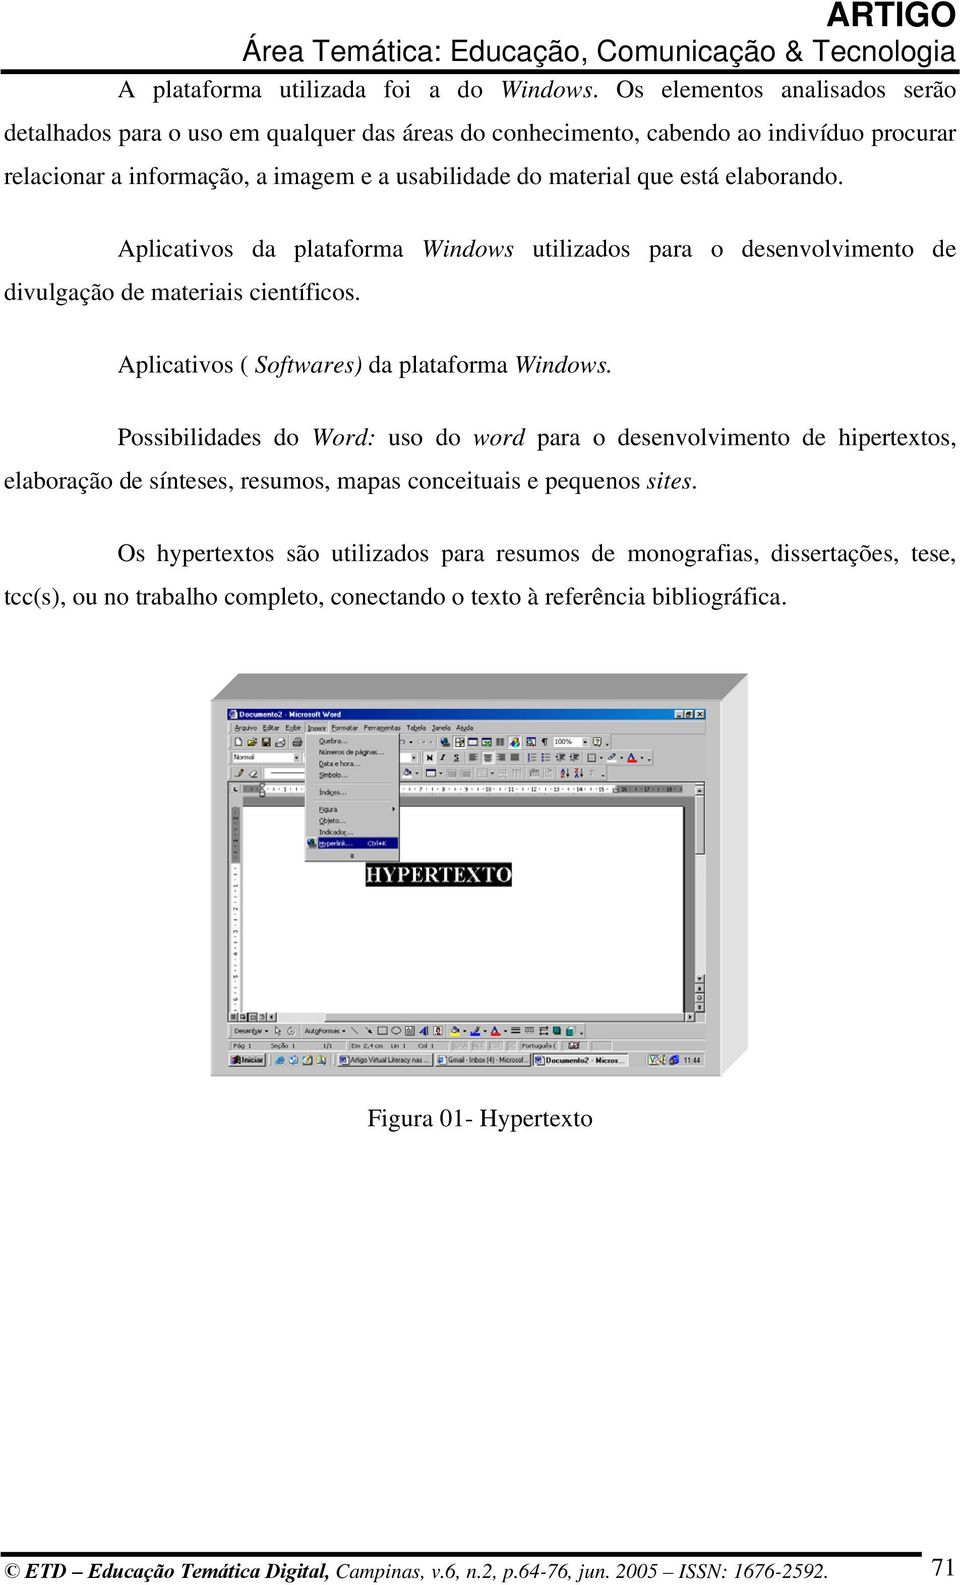 elaborando. Aplicativos da plataforma Windows utilizados para o desenvolvimento de divulgação de materiais científicos. Aplicativos ( Softwares) da plataforma Windows.